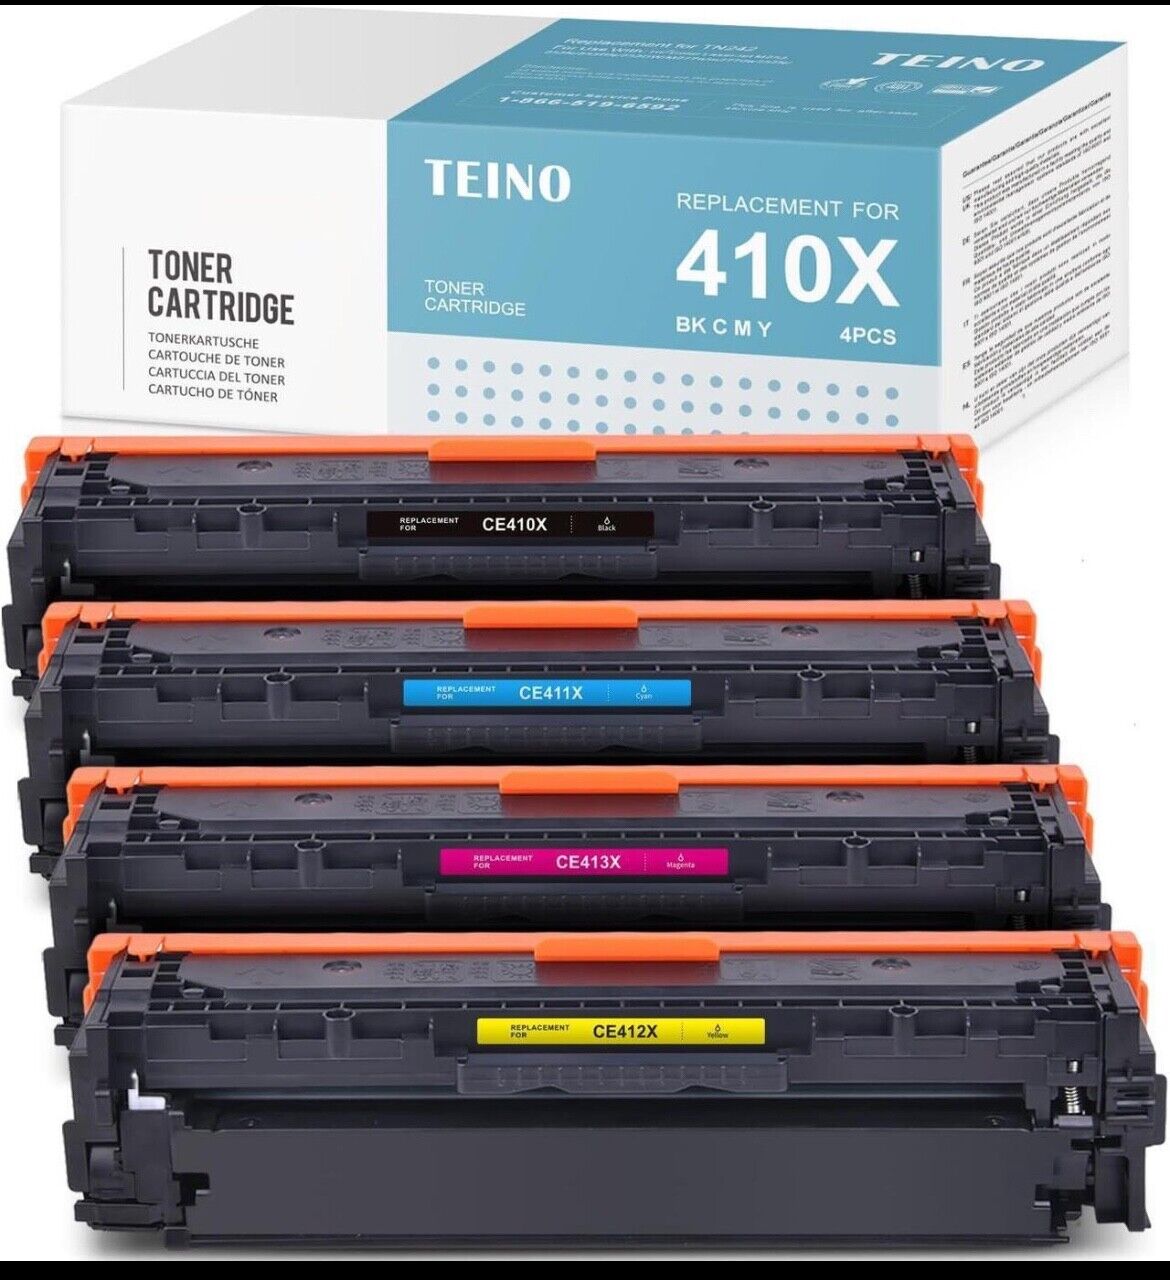 TEINO Toner Cartridge Replacement 410X CF410X CF411X CF412X CF413X